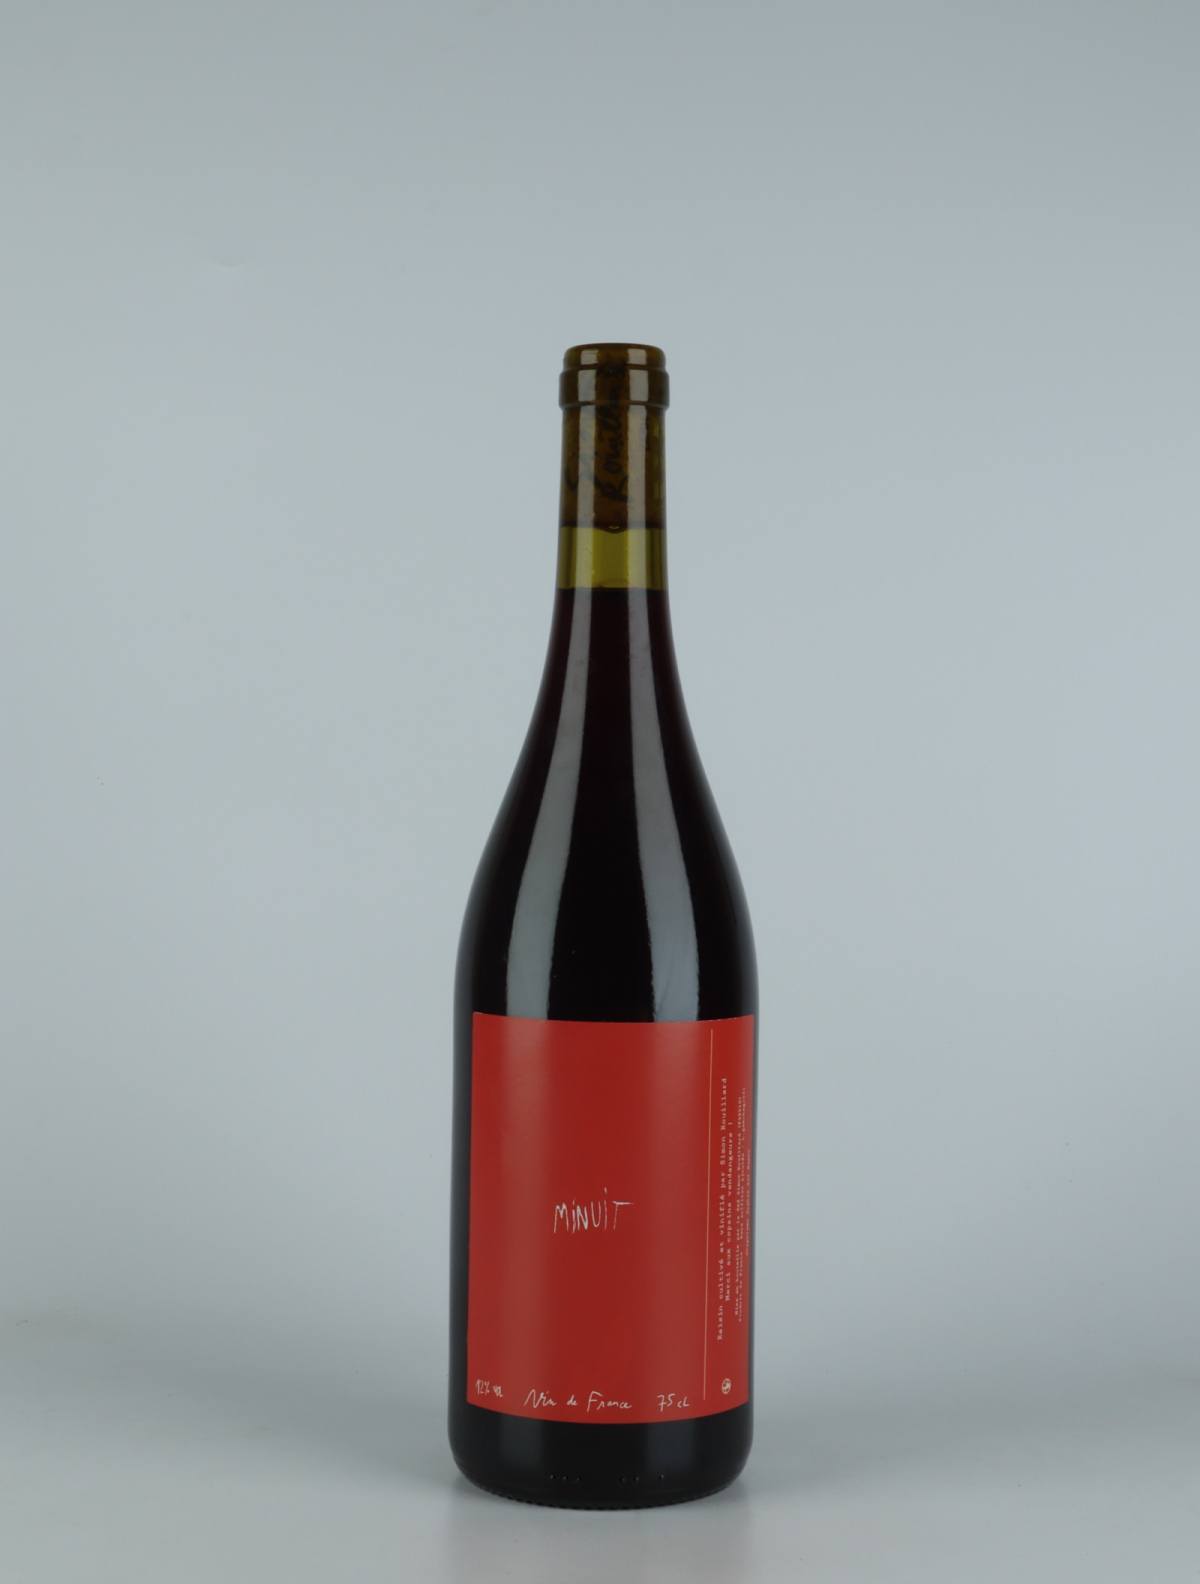 En flaske 2021 Minuit Rødvin fra Simon Rouillard, Loire i Frankrig